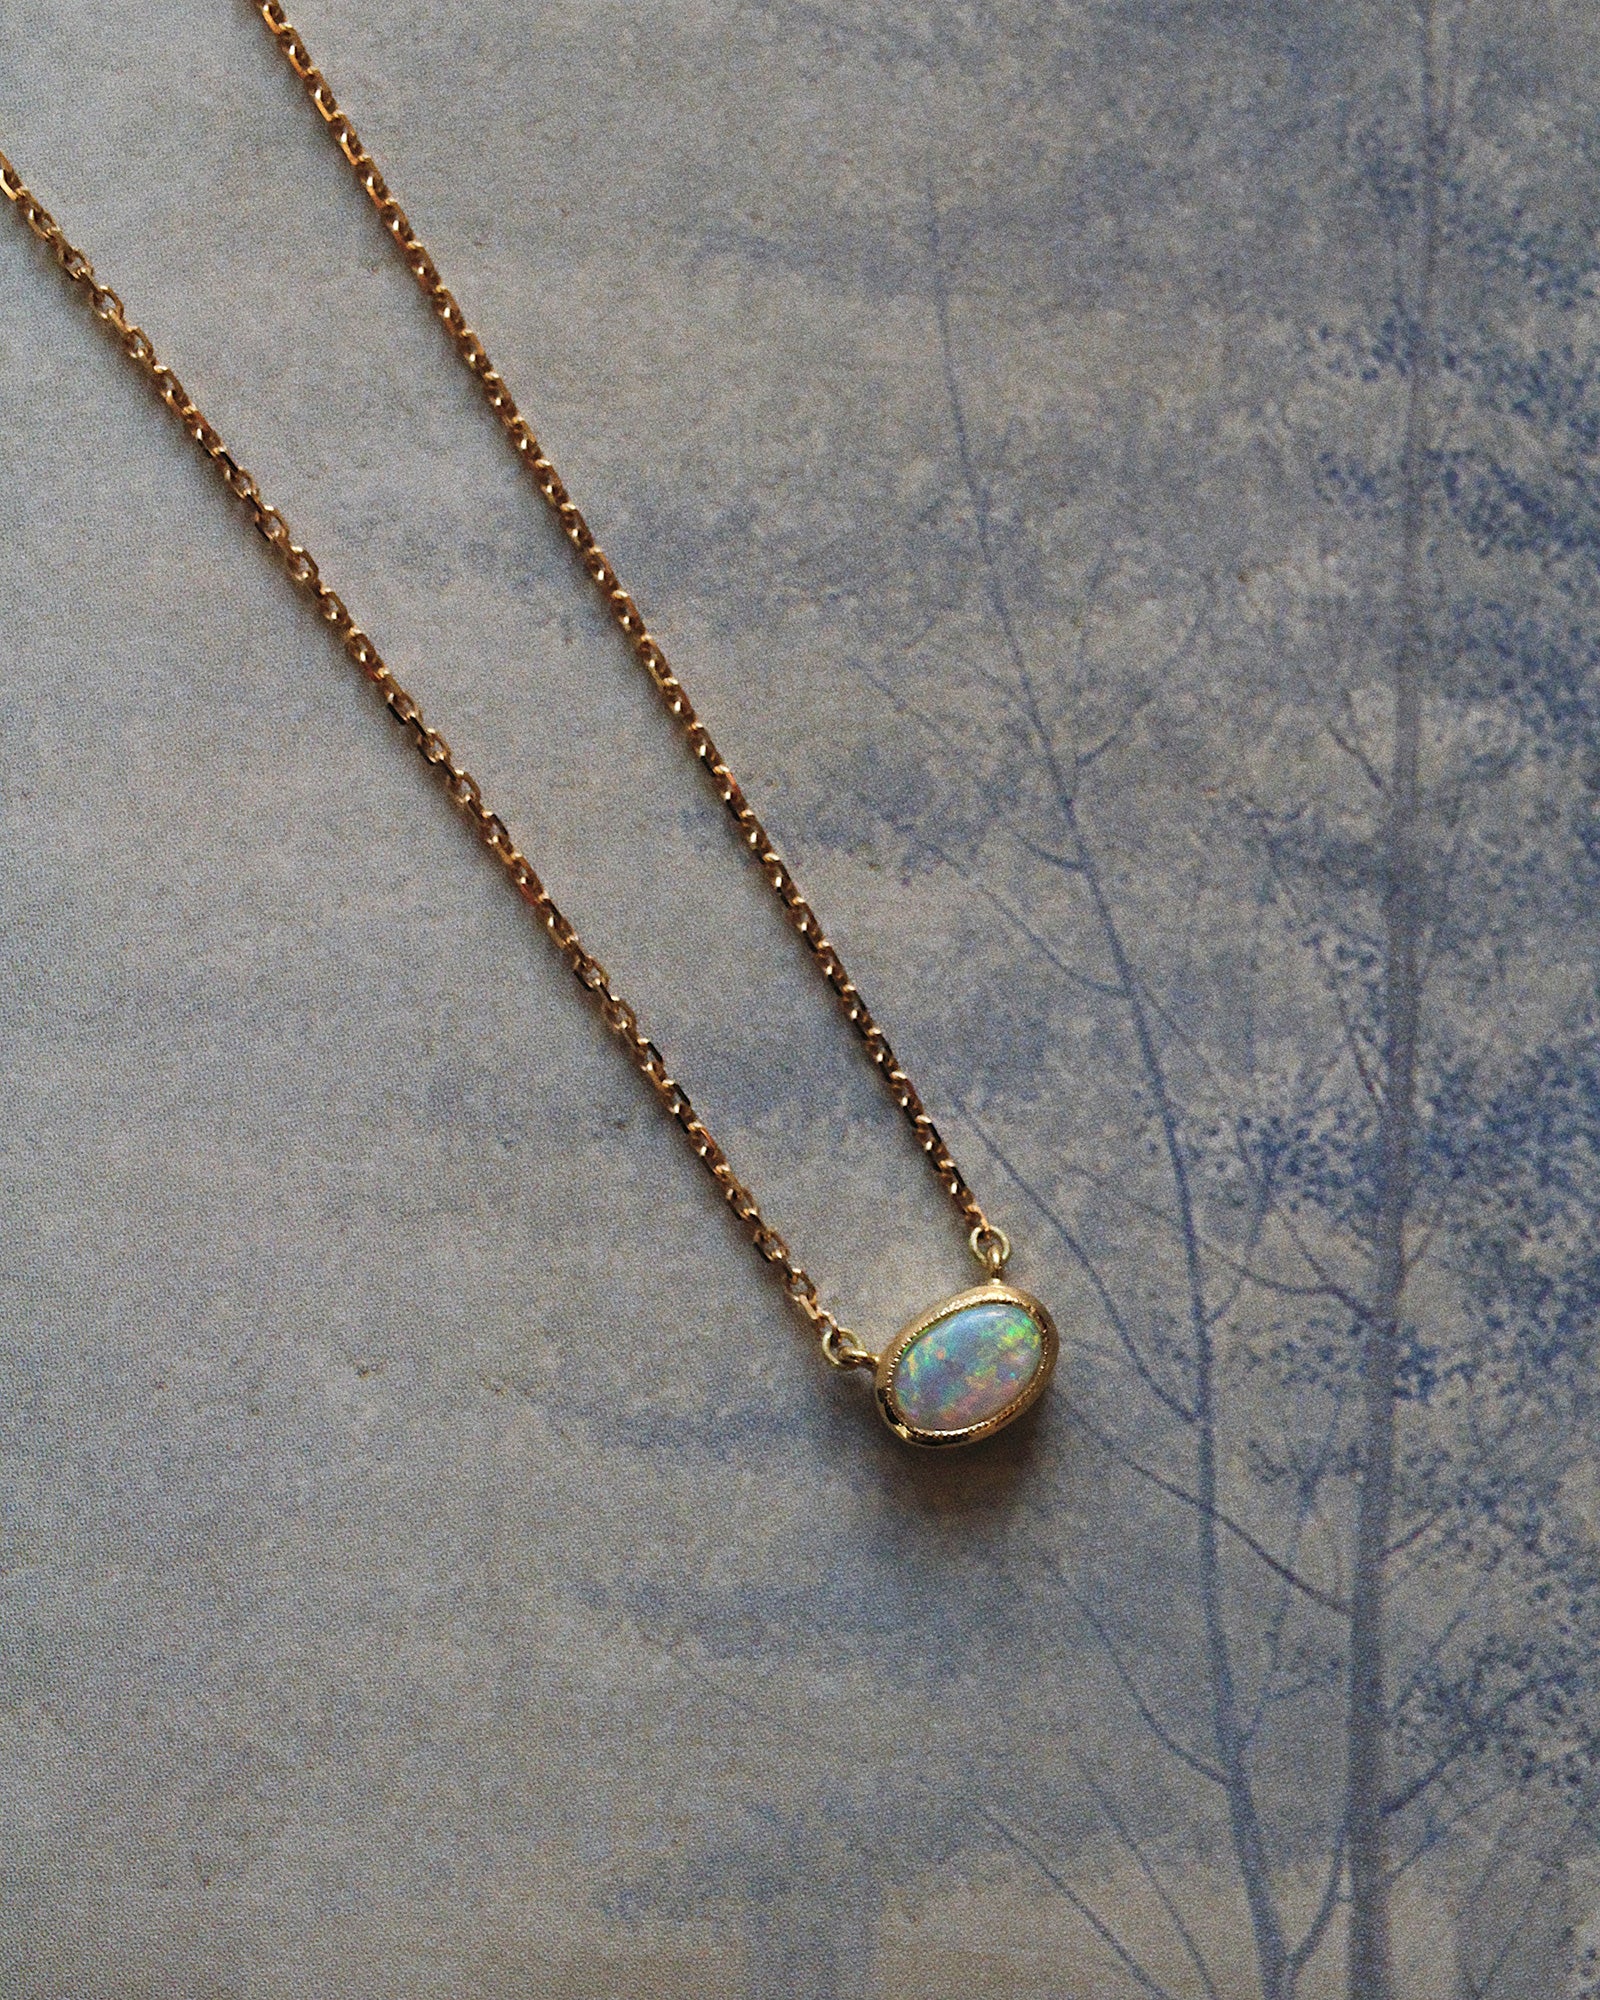 Australian Opal Necklace | Opal necklace, Australian opal, Opal